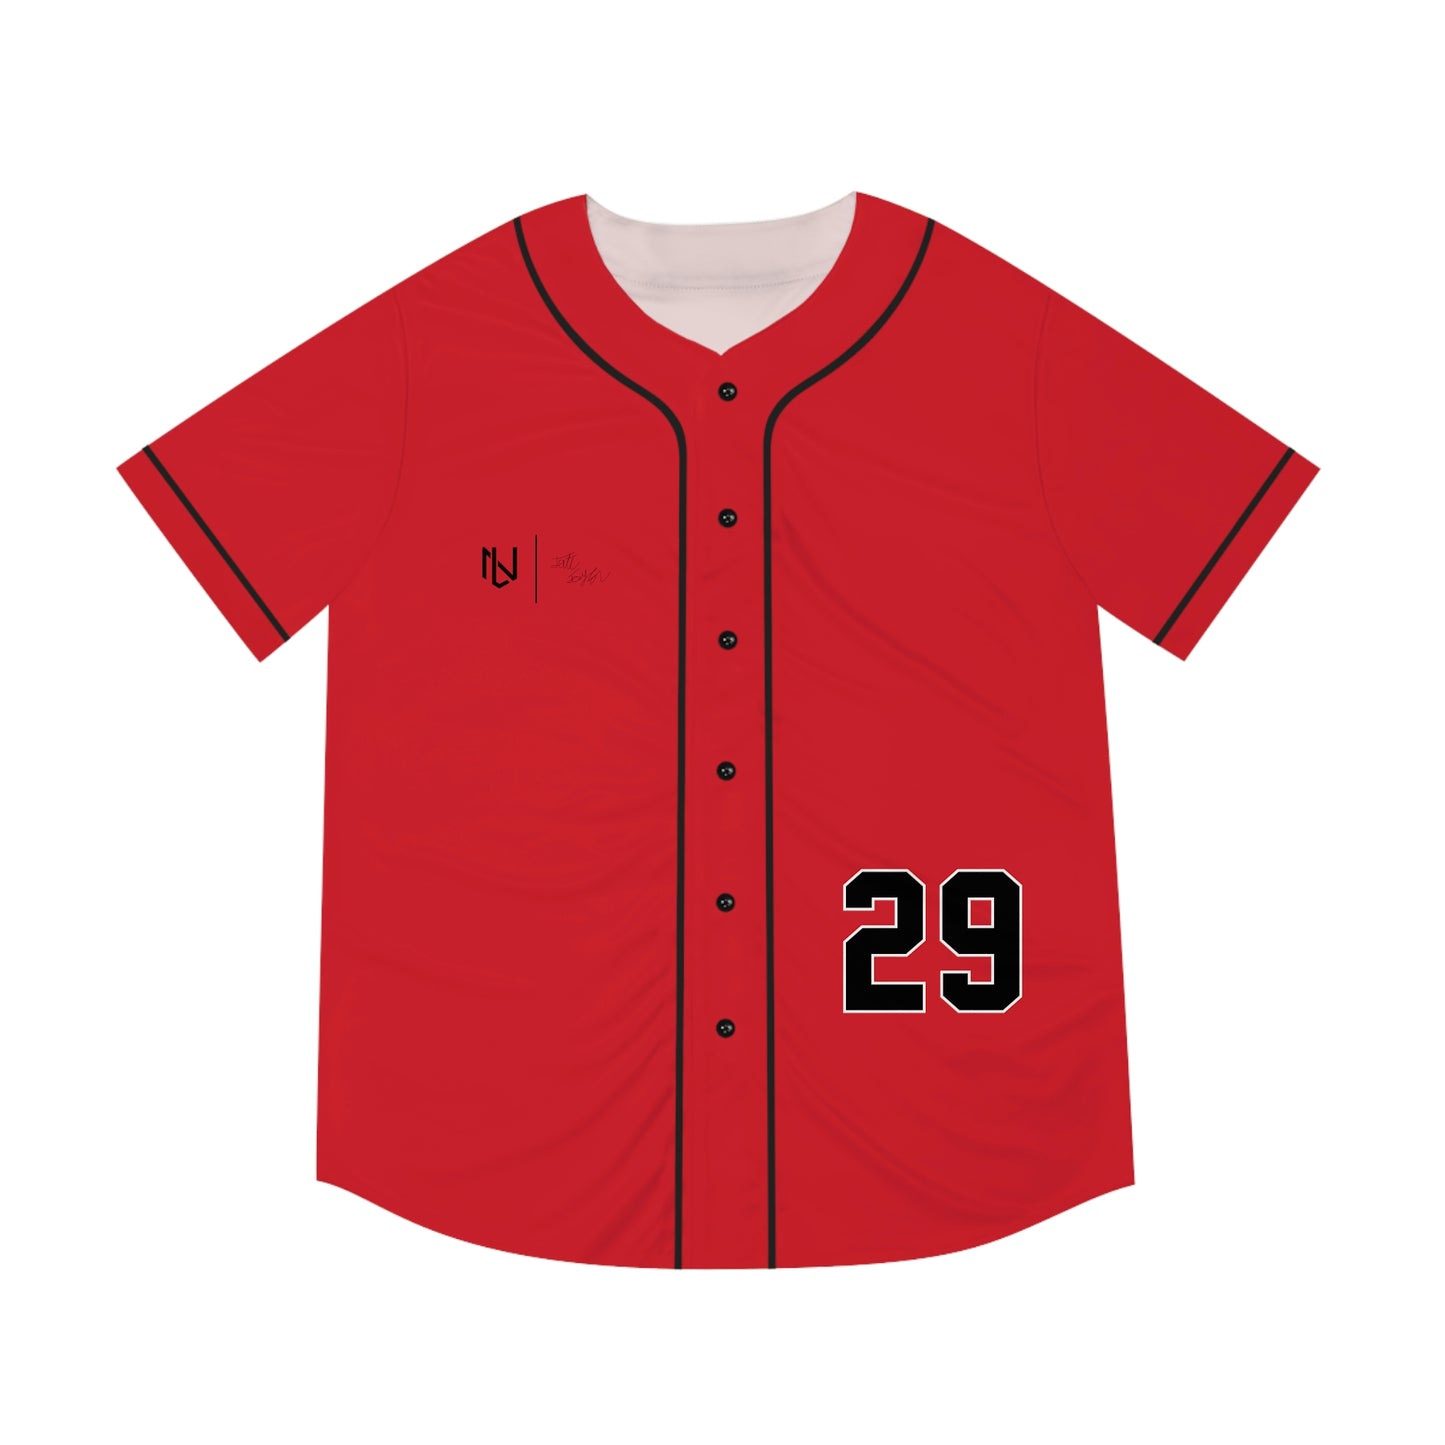 Tate Taylor Baseball Jersey (Red)